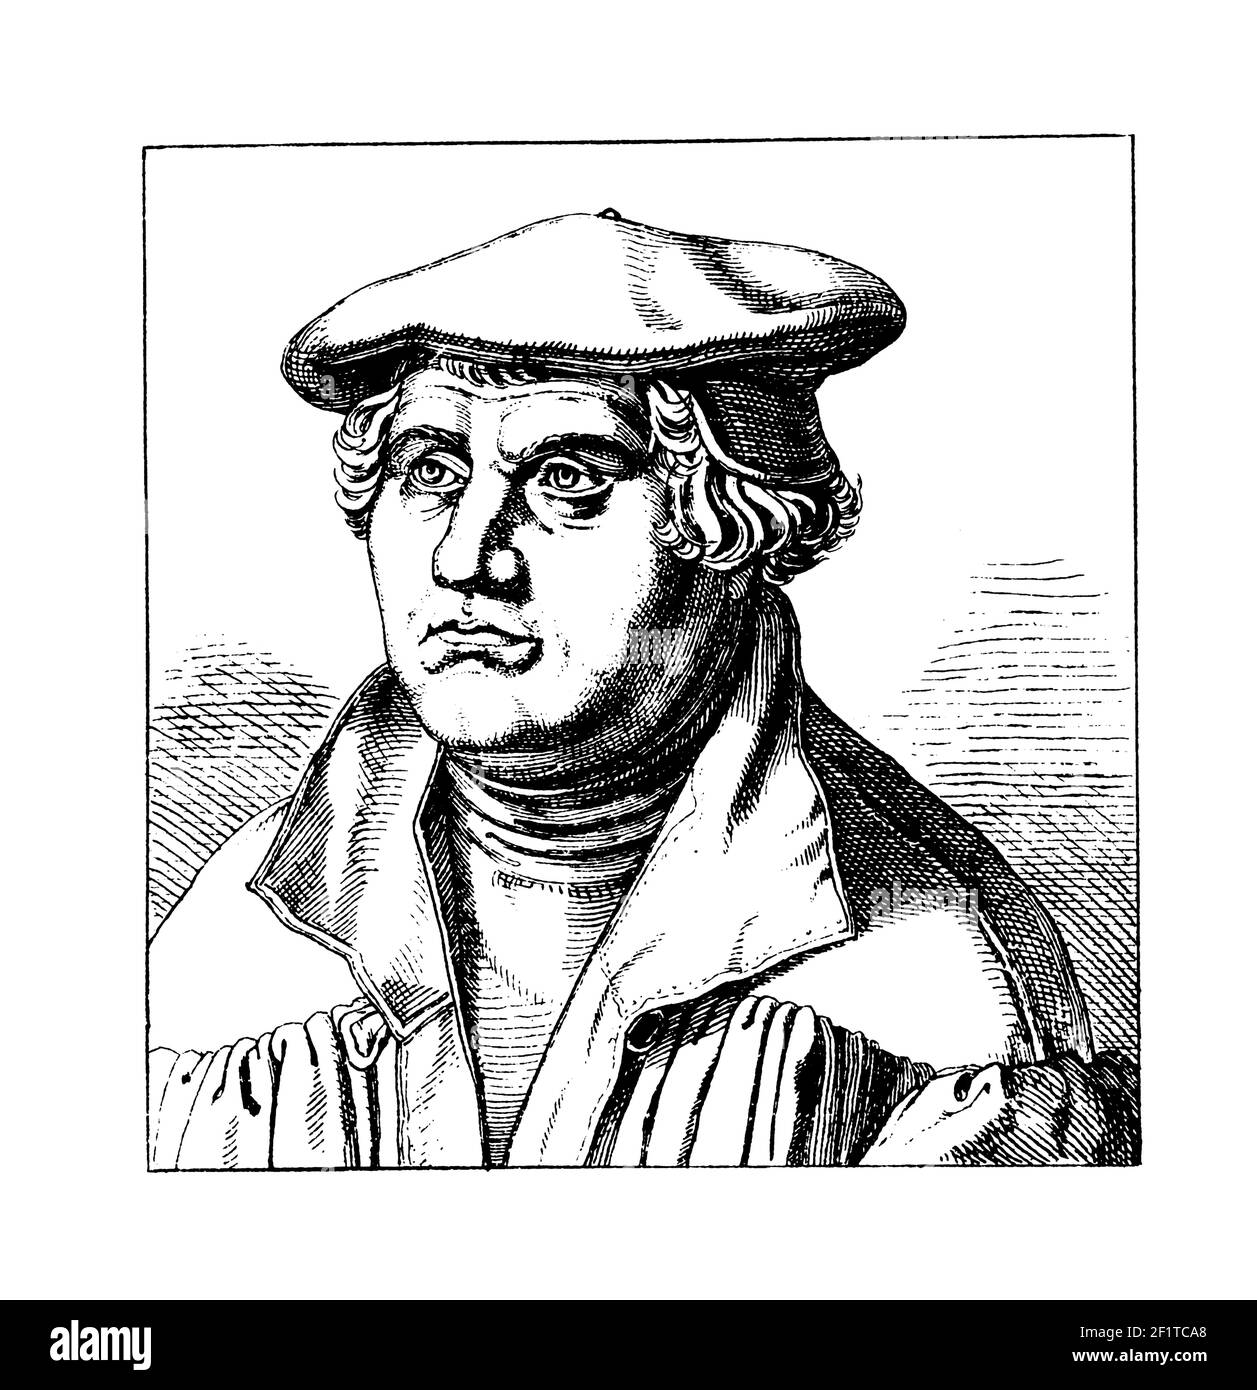 Illustrazione classica di un ritratto di Martin Lutero, iniziatore della riforma protestante. Lutero nacque il 10 novembre 1483 a Eisleben, Sassonia Foto Stock